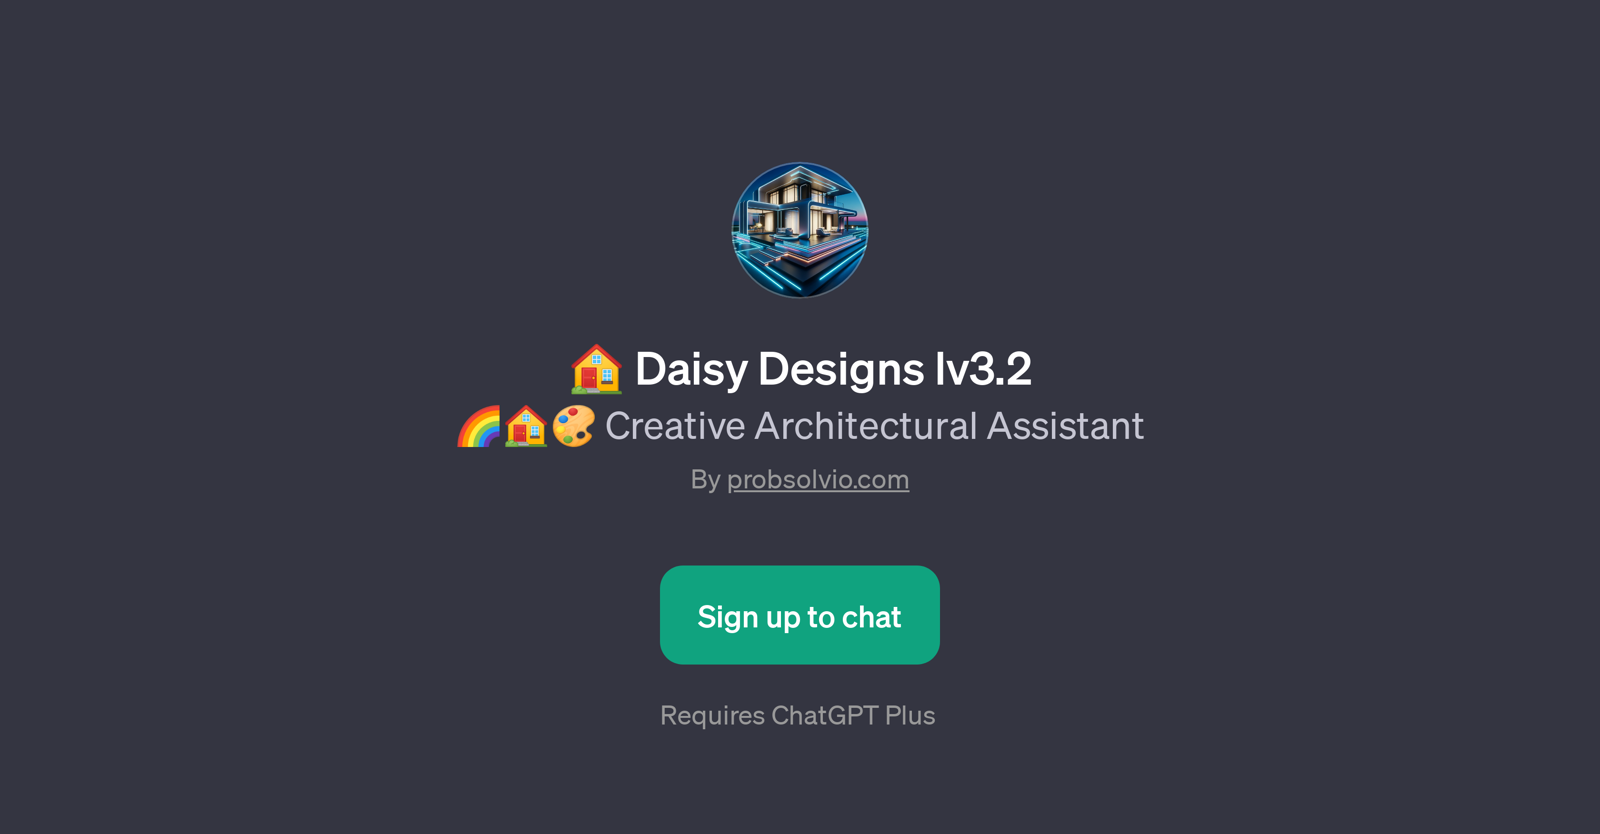 Daisy Designs lv3.2 website